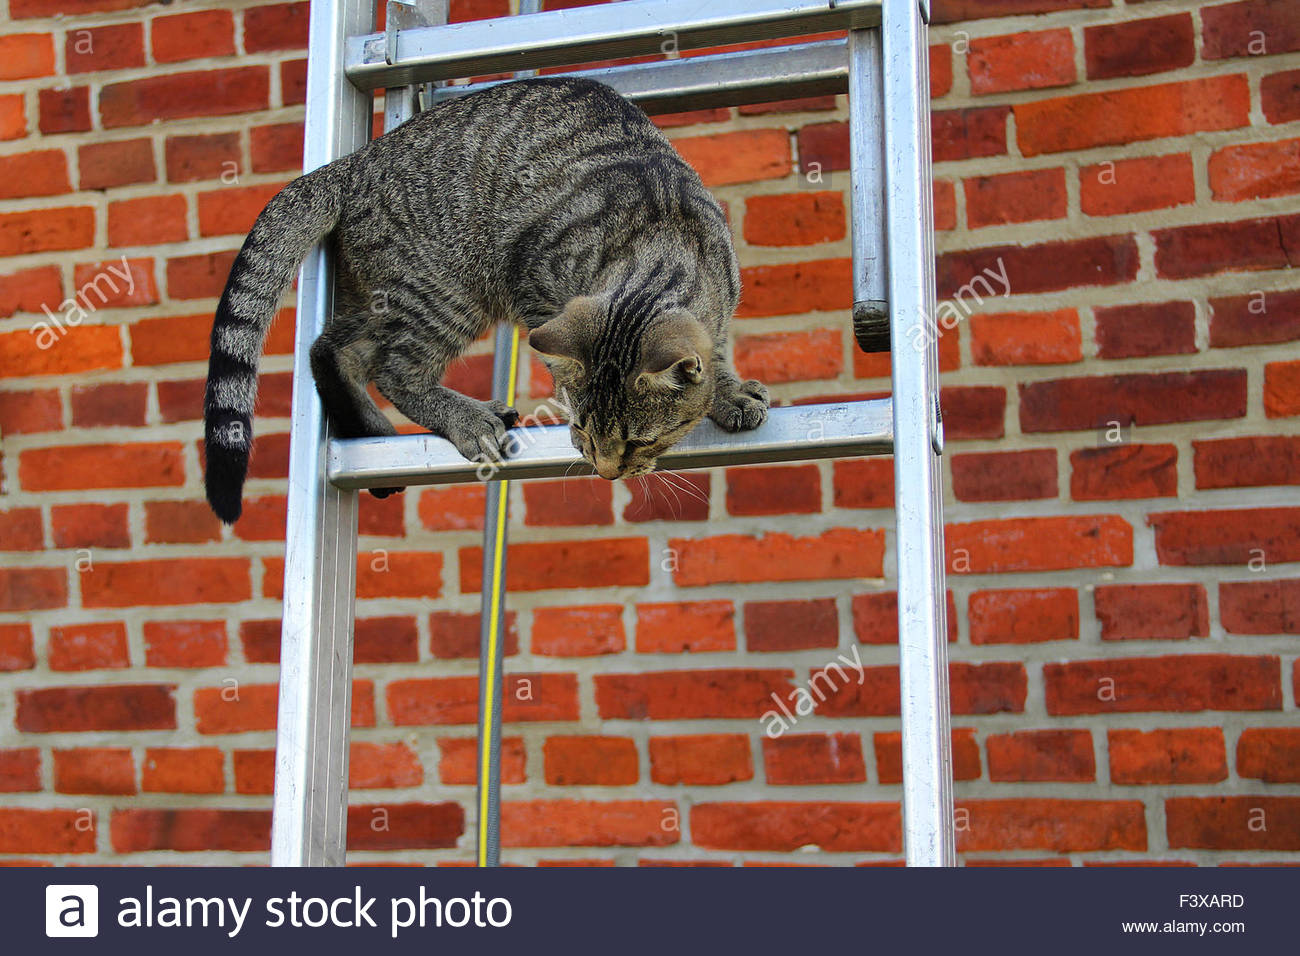 cat on ladder F3XARD